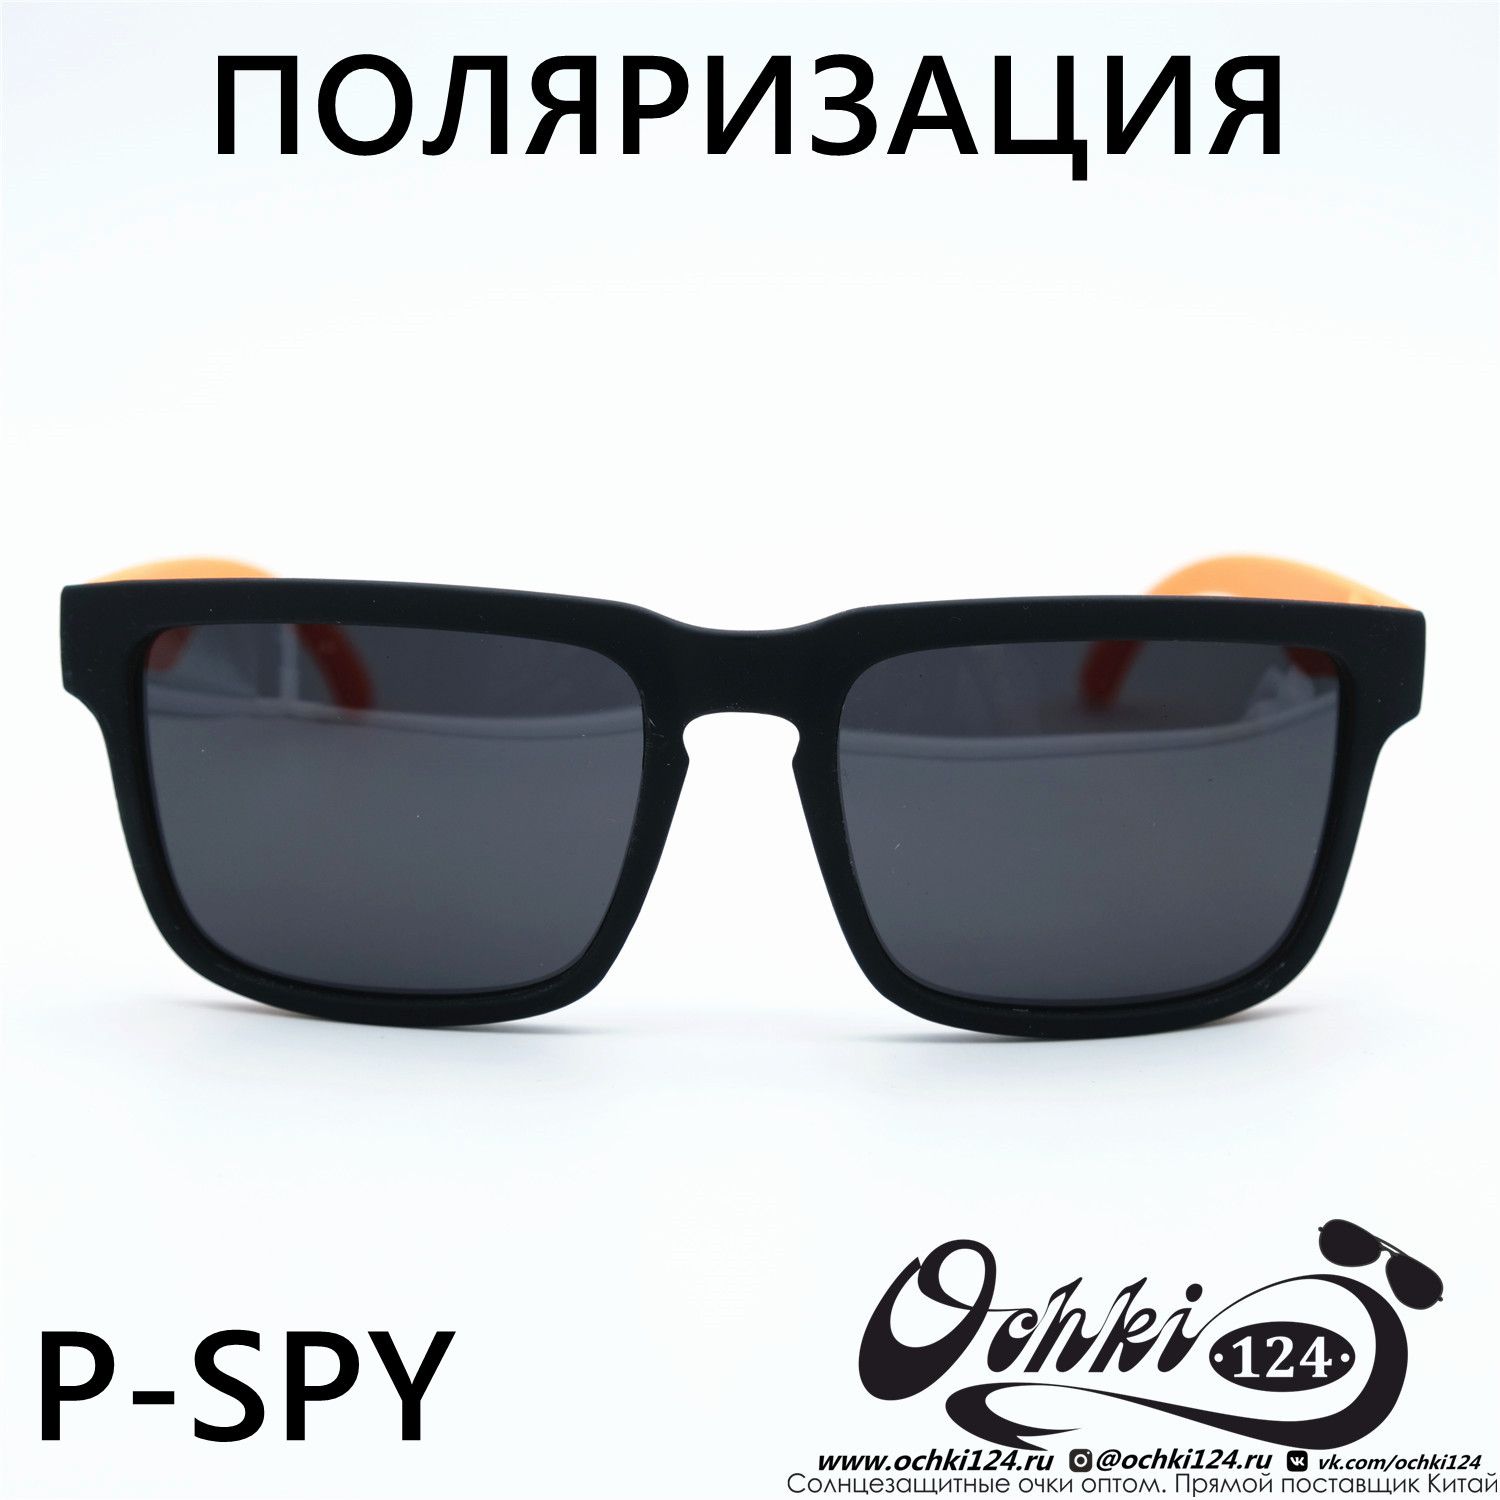  Солнцезащитные очки картинка Мужские MATRIUXT  Квадратные P-SPY-C4 